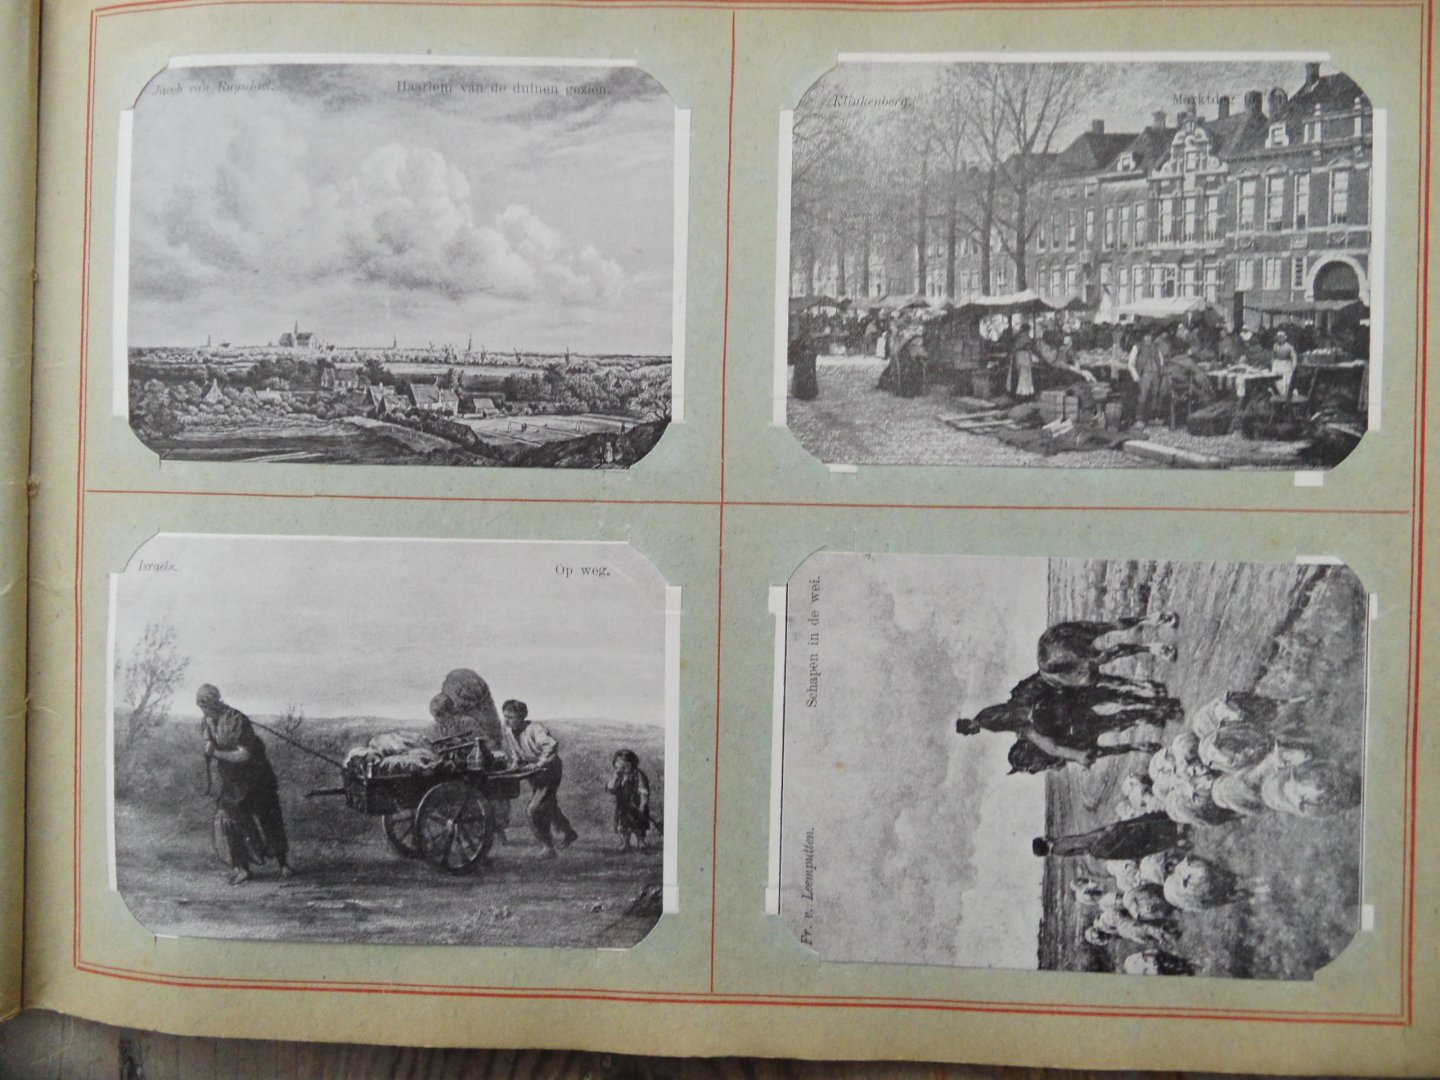 NN - Album "Mooi Nederland" 1907 - voor het verzamelen der plaatjes van den geillustreerden scheurkalender